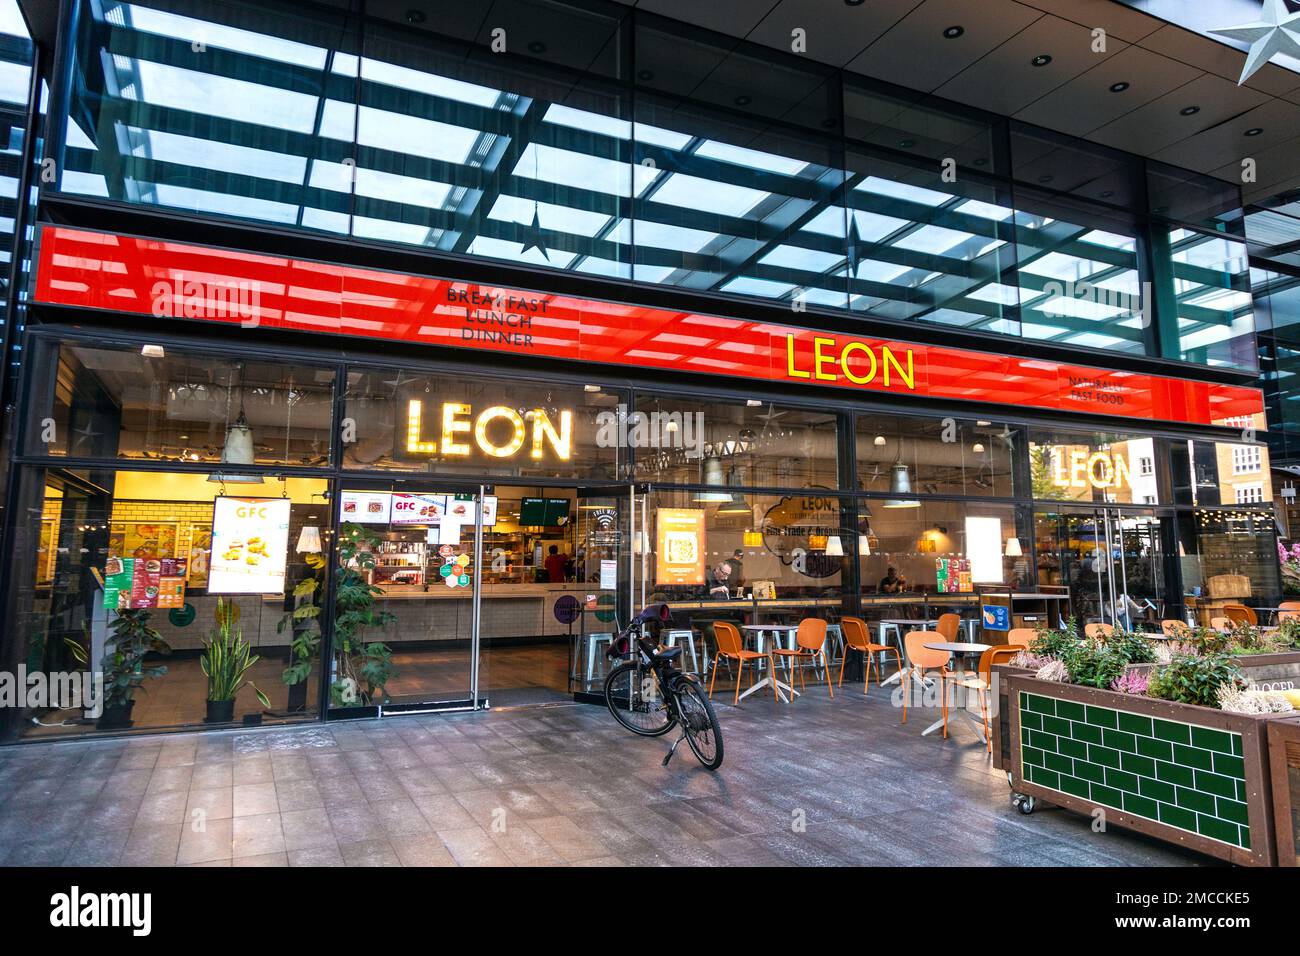 Leon fast-food au marché de Spitalfields, Londres, Royaume-Uni Banque D'Images